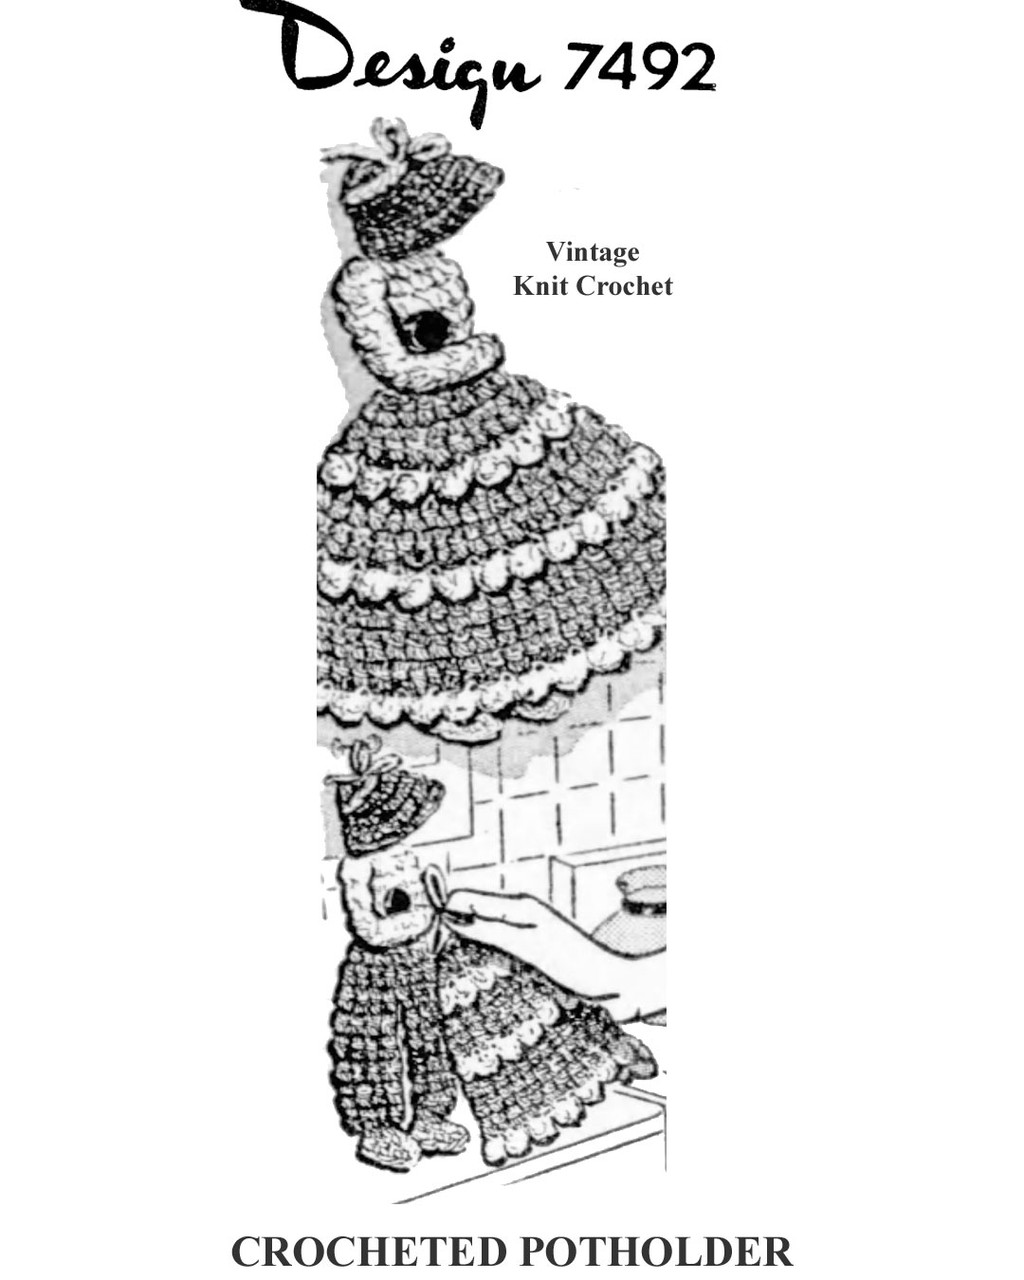 Old Fashioned Girl Crochet Potholder Set Pattern Design 7492